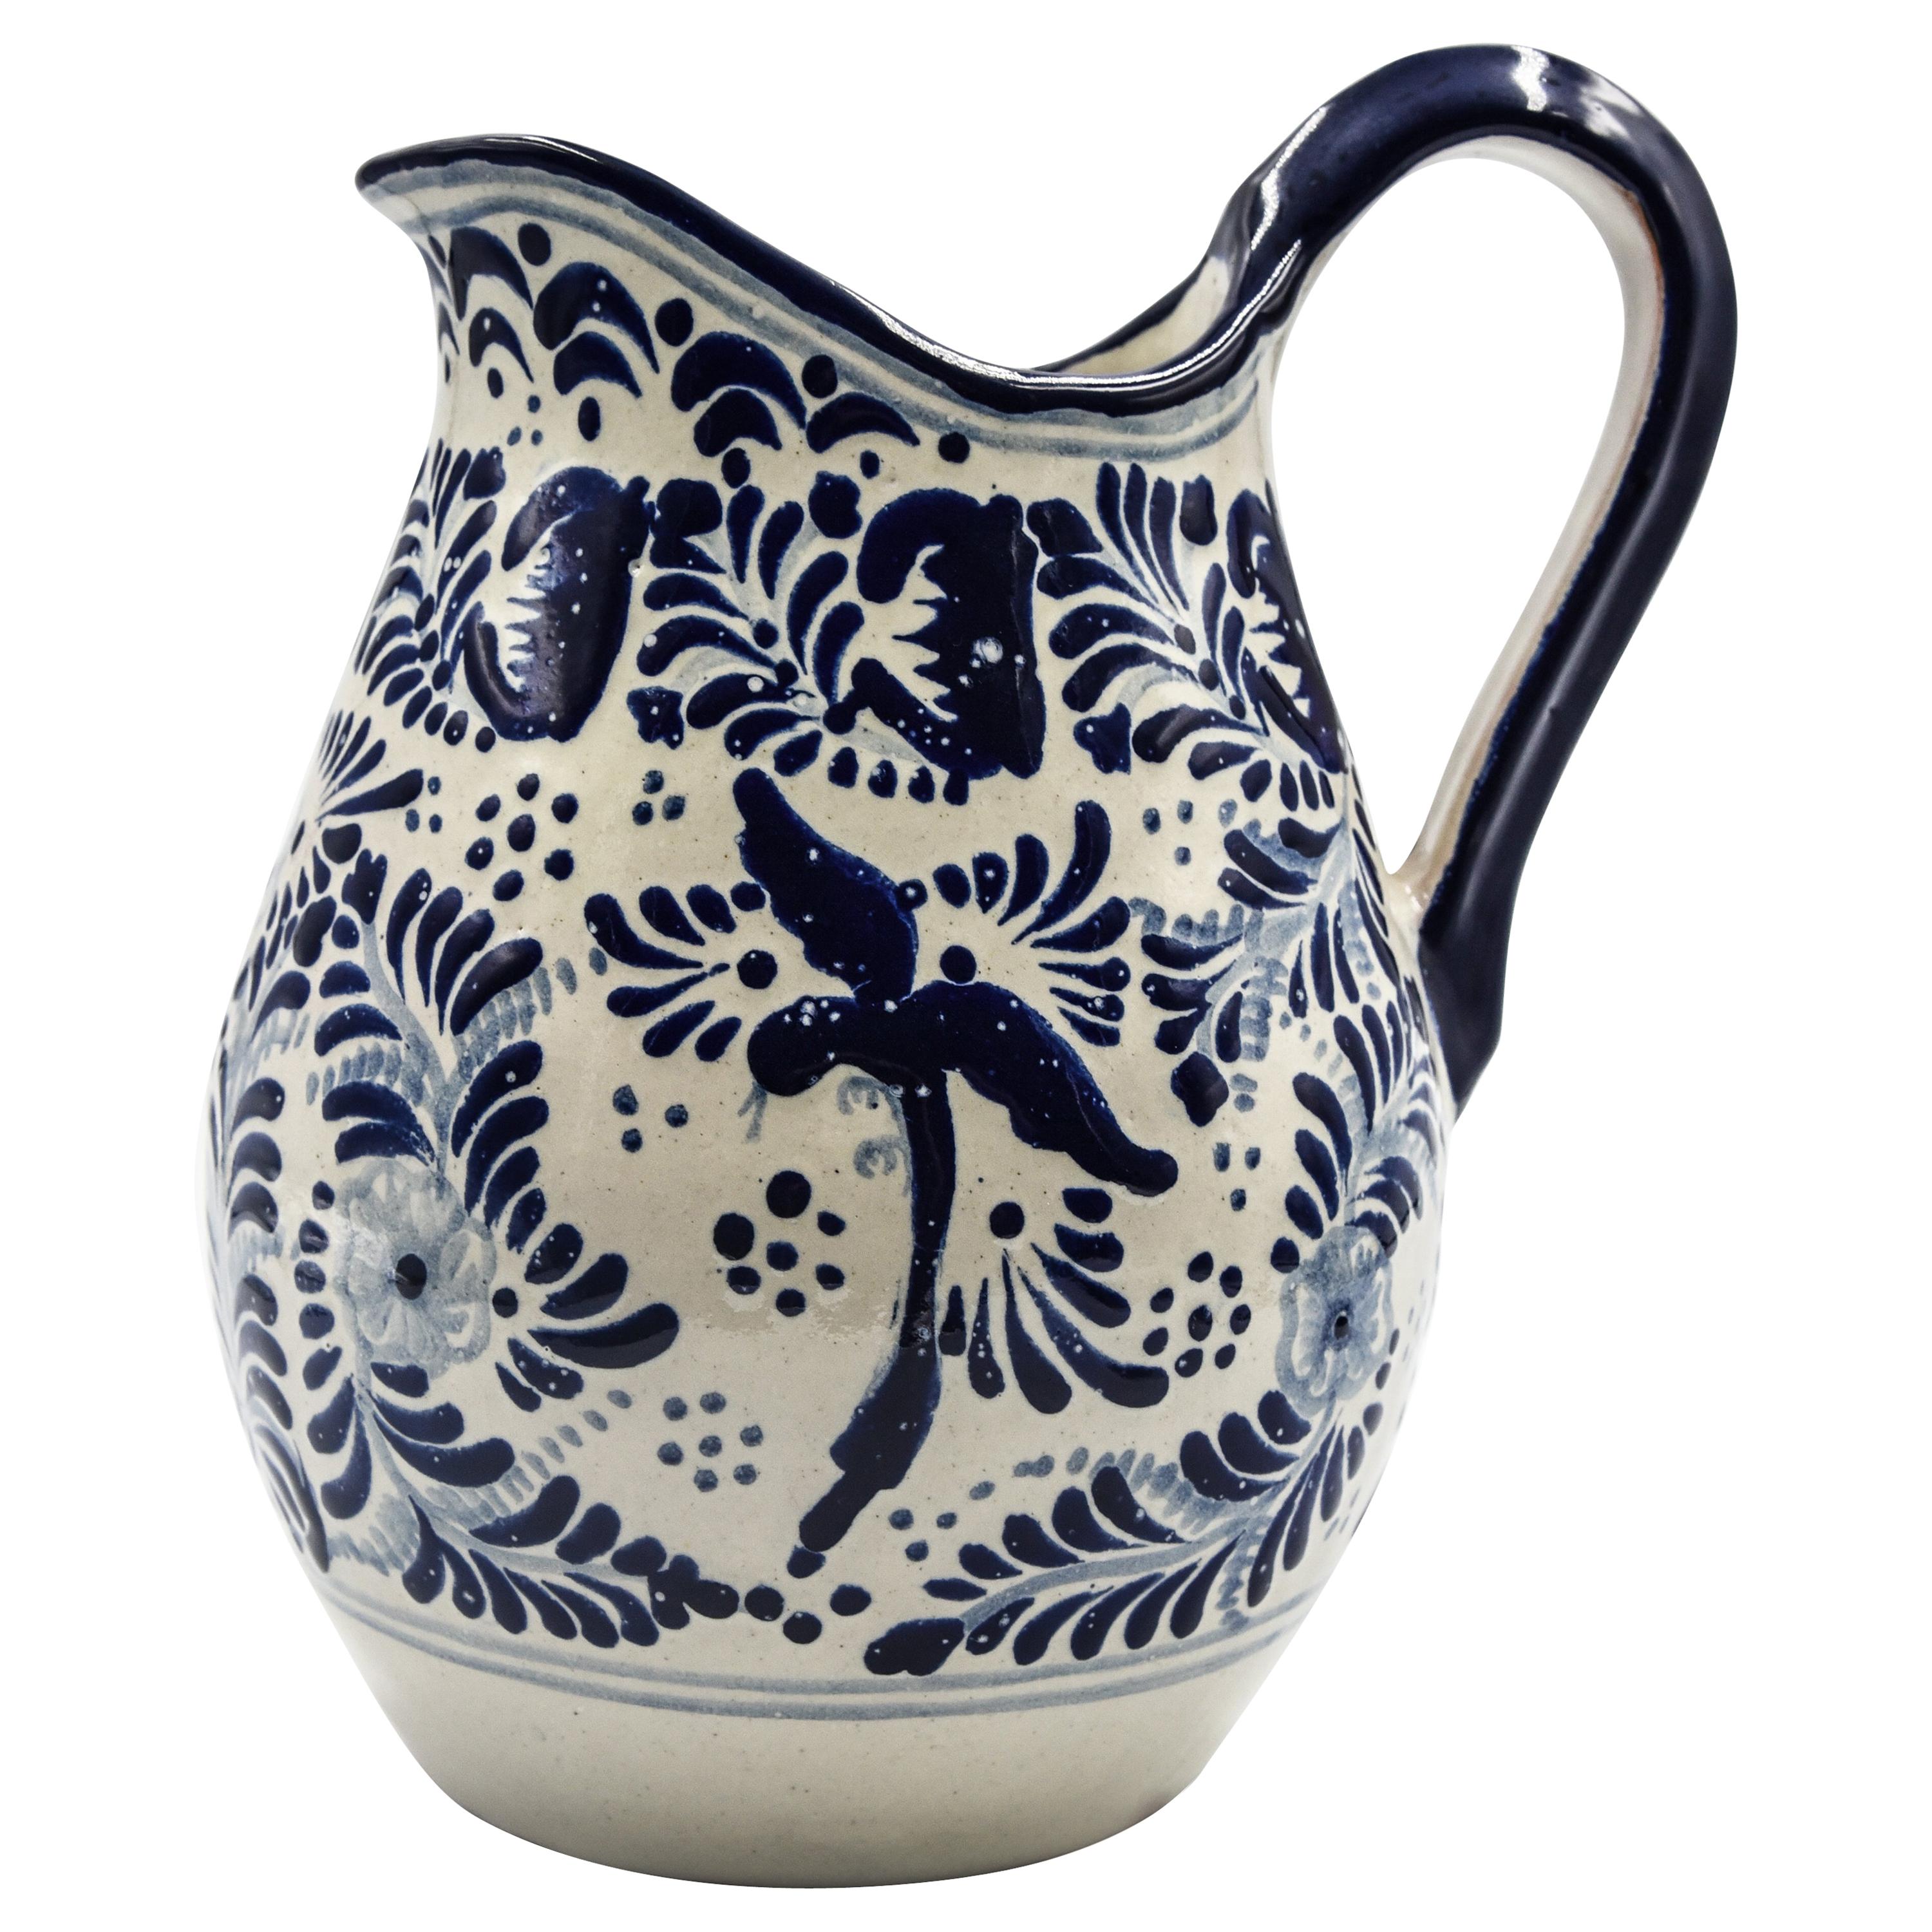 Authentische Talavera Blau Krug Puebla Keramik Traditionelle mexikanische dekorative